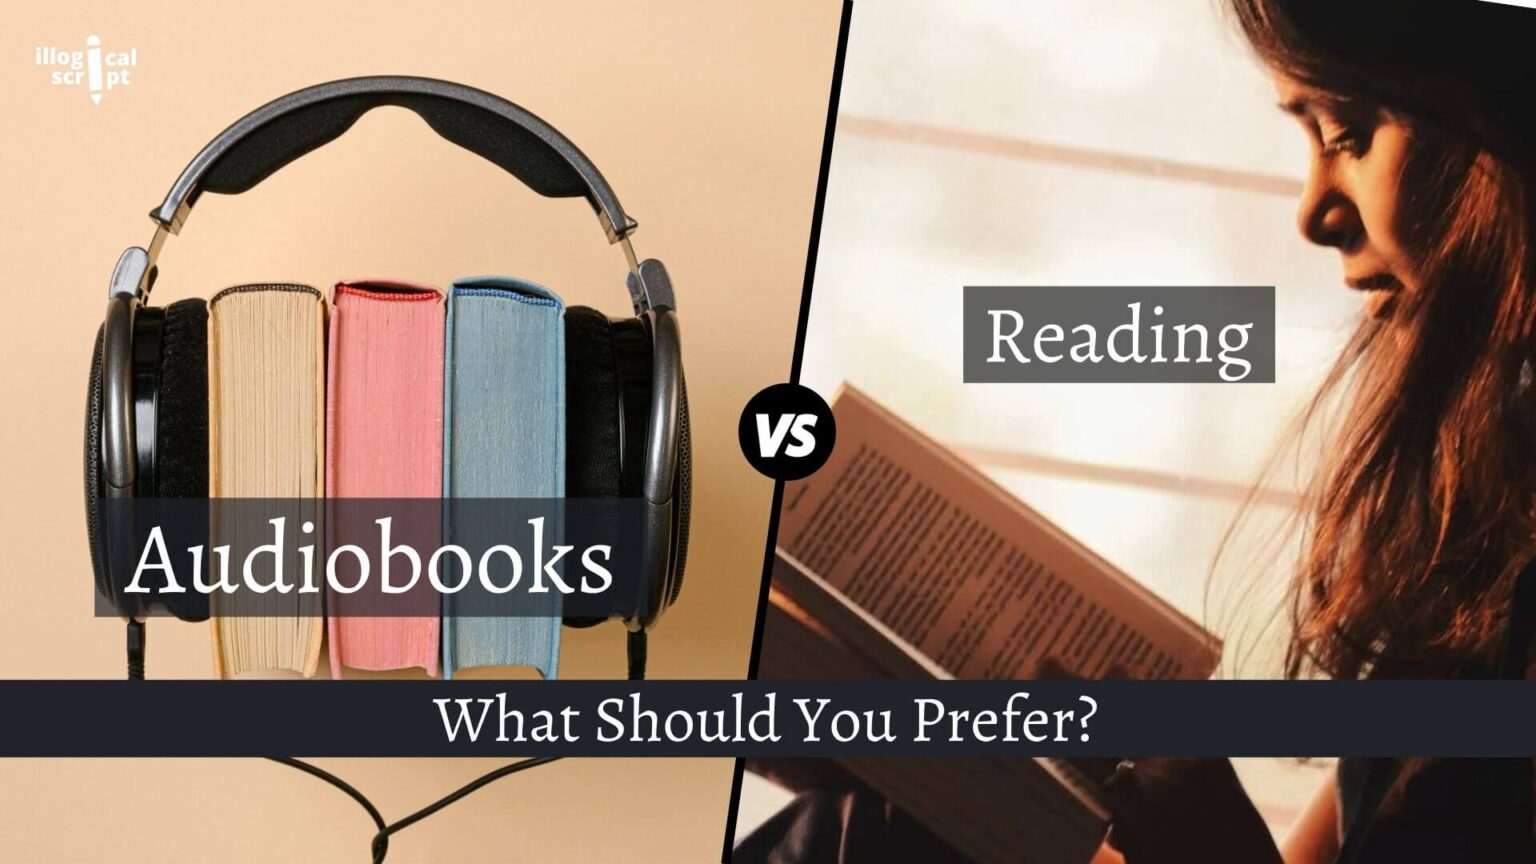 listening to audiobooks vs reading